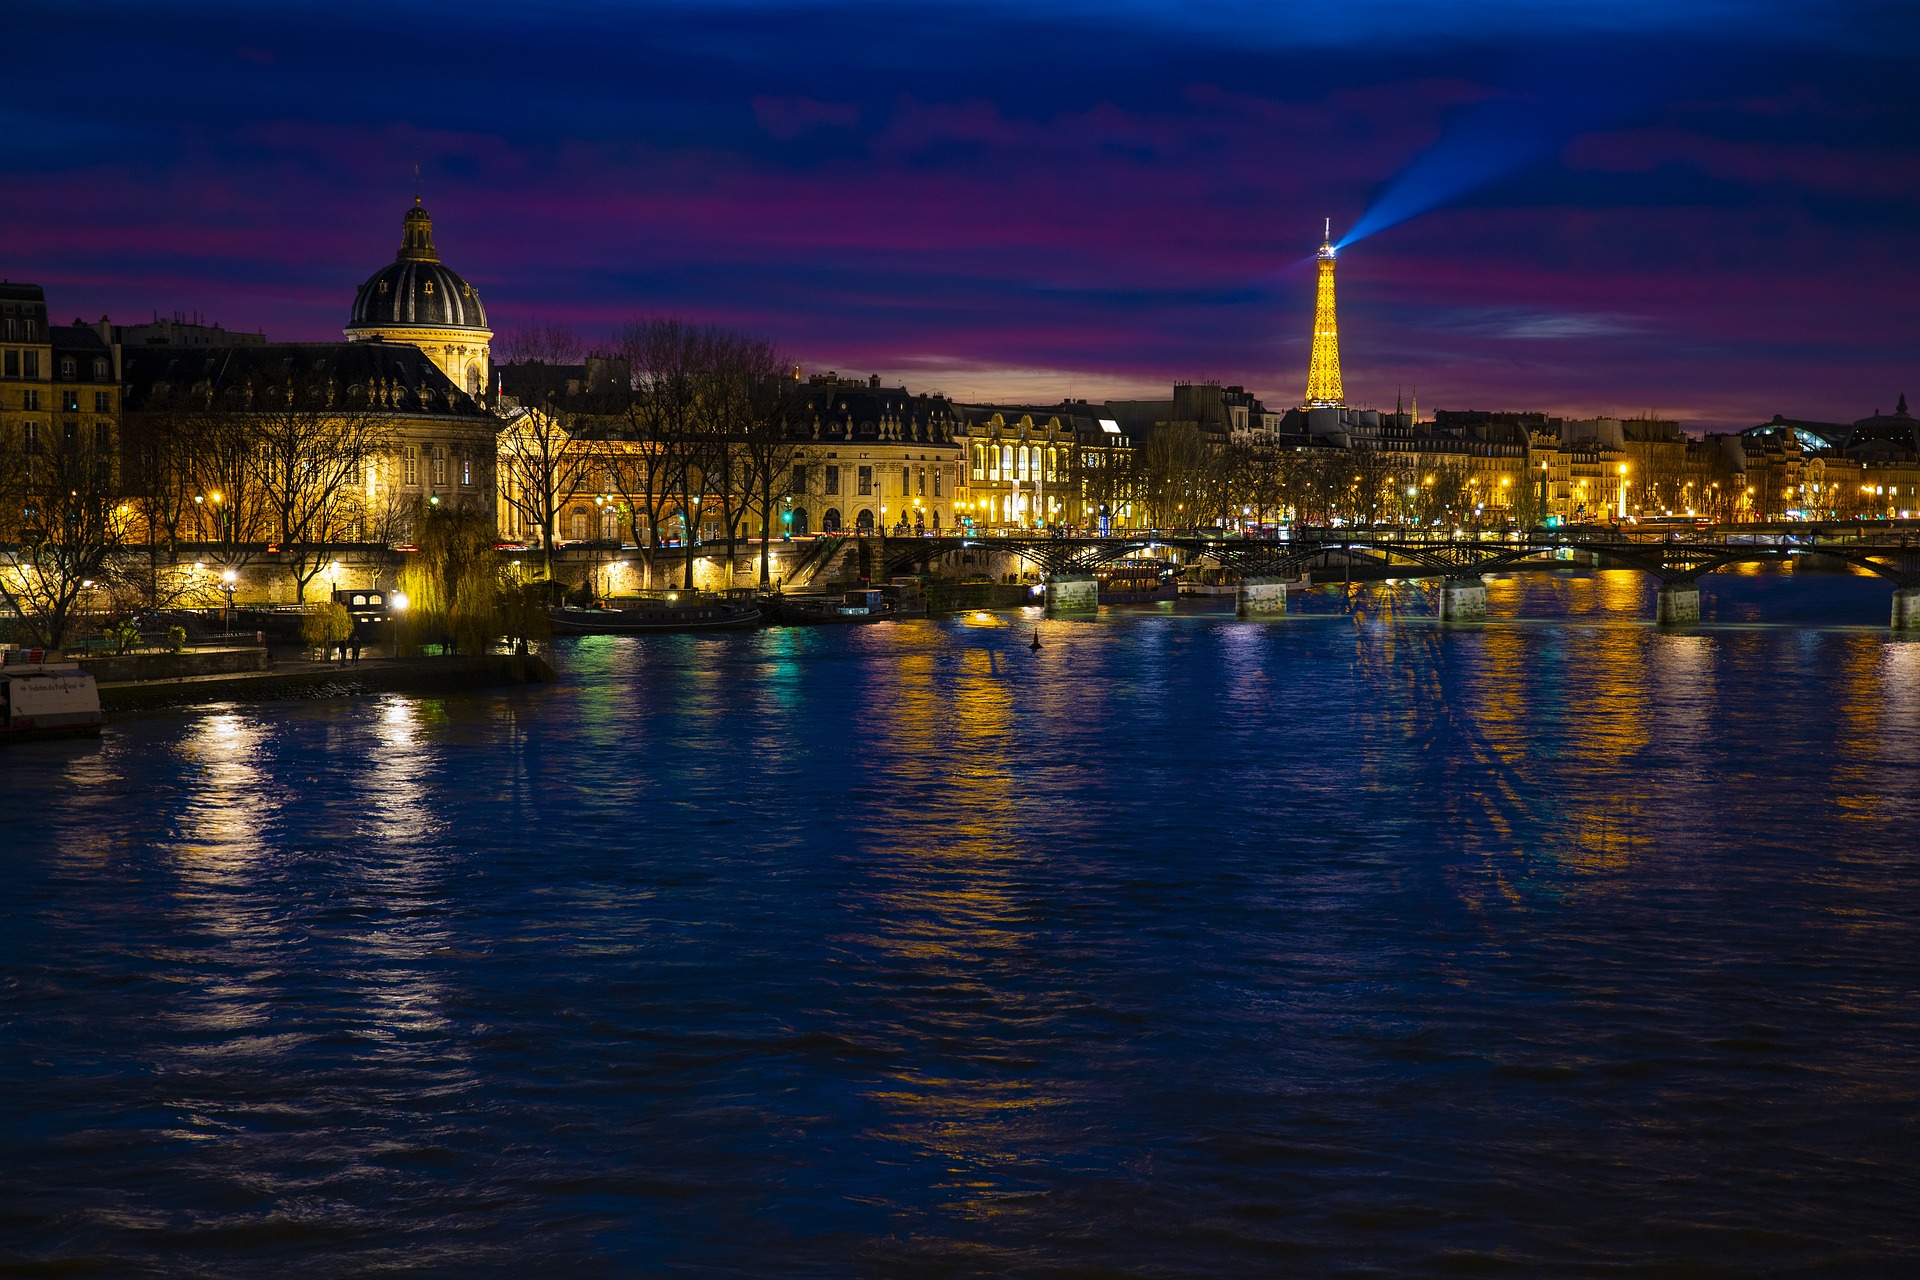 Hôtels à Paris avec vue sur la Tour Eiffel